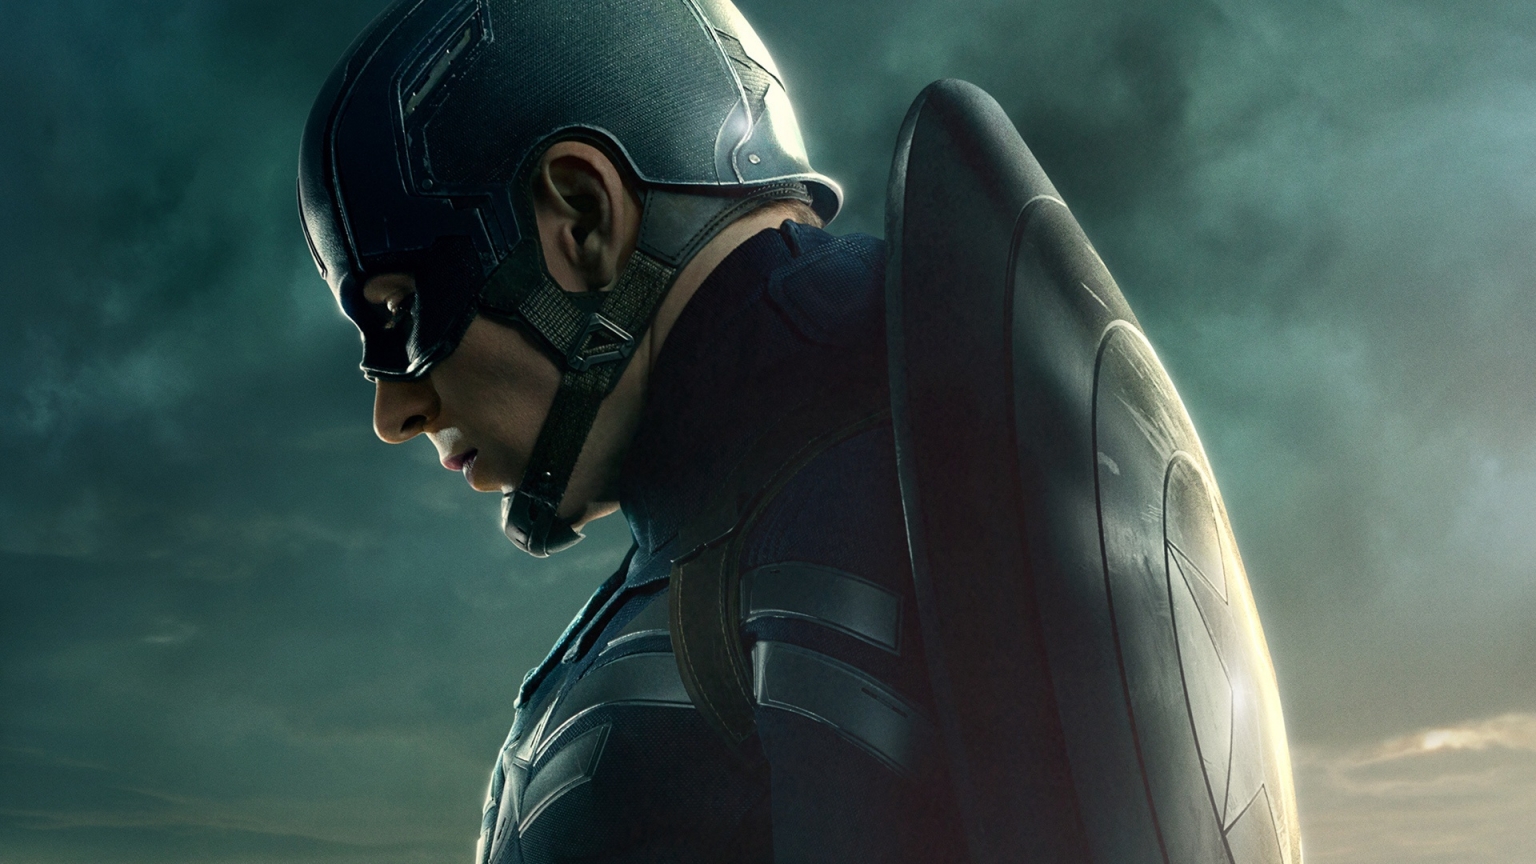 Steven Rogers Captain America for 1536 x 864 HDTV resolution